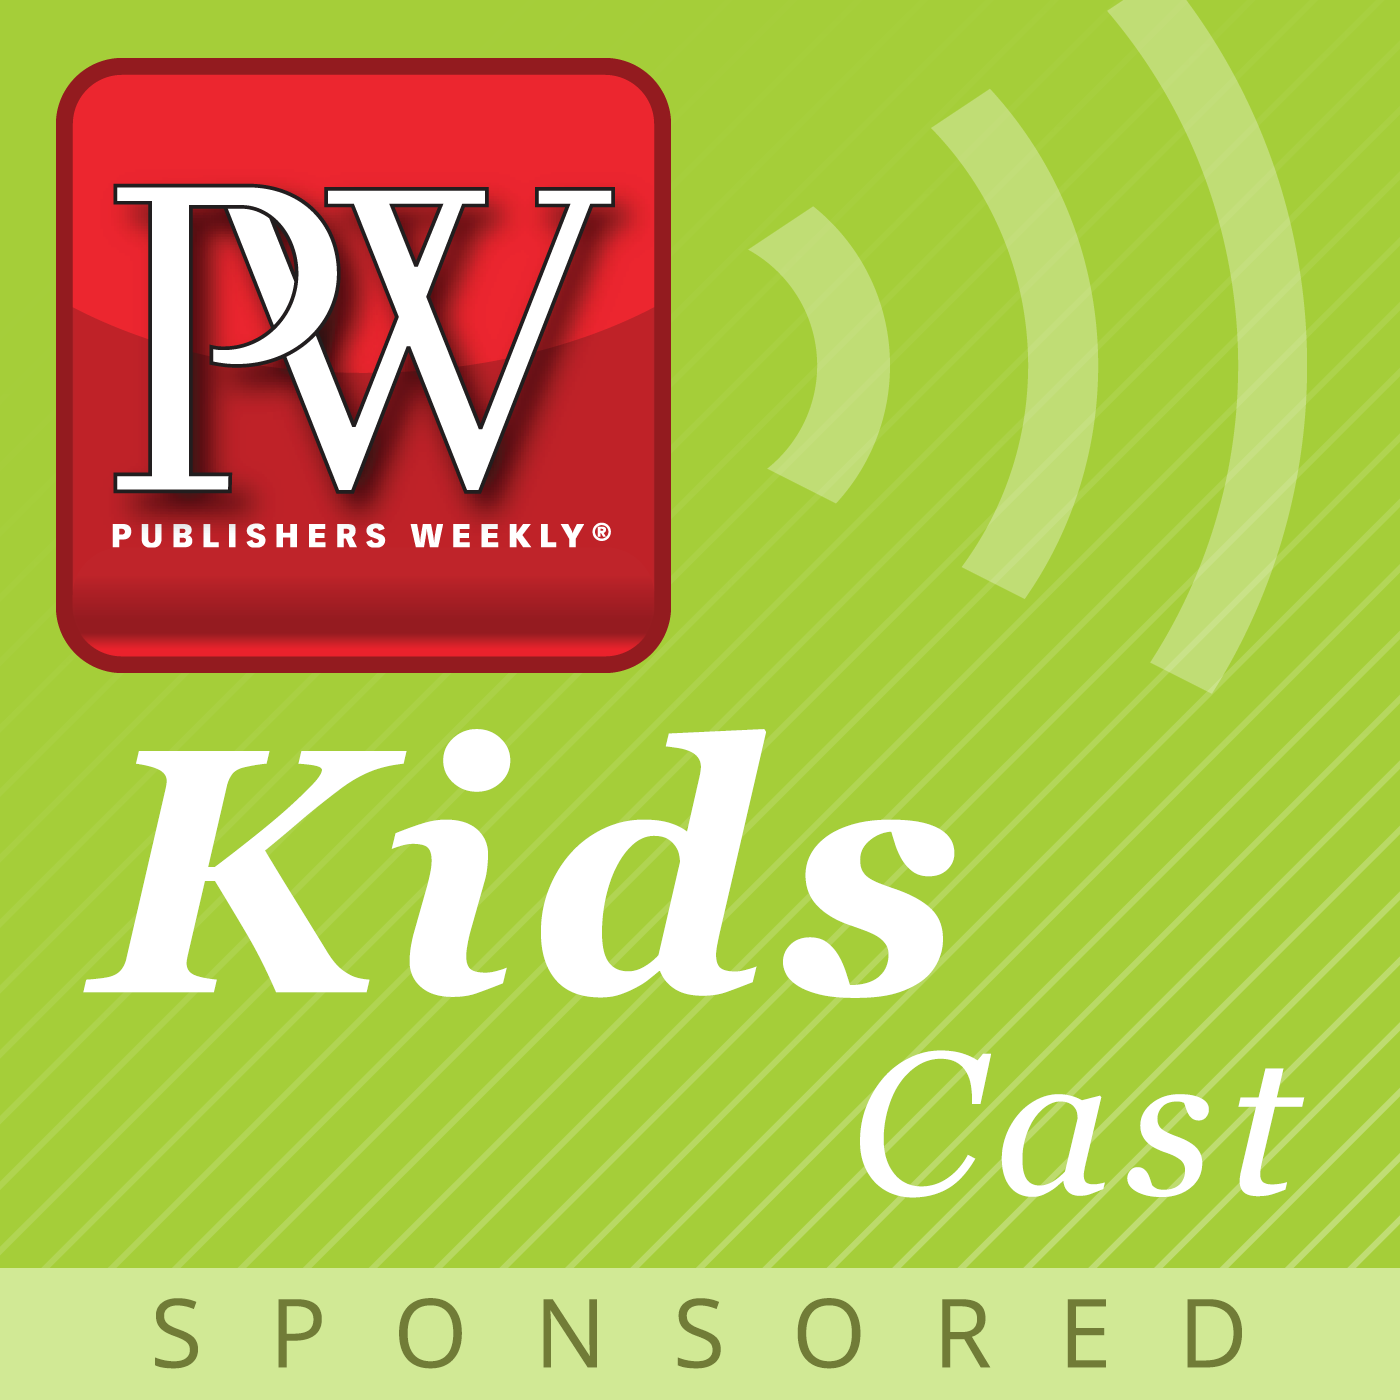 PW Kidscast